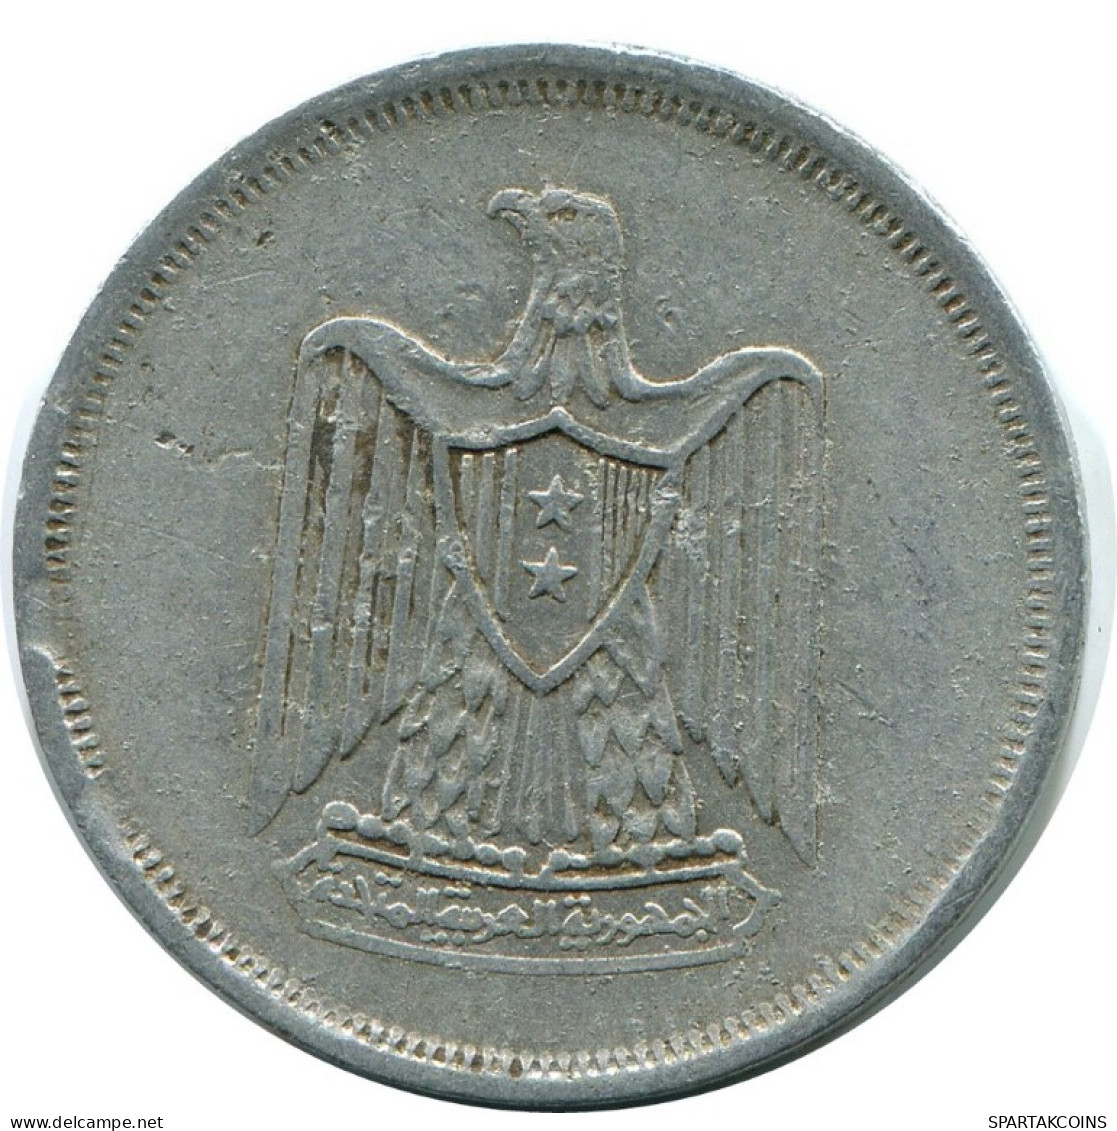 10 MILLIEMES 1967 ÄGYPTEN EGYPT Islamisch Münze #AH663.3.D.A - Egypte